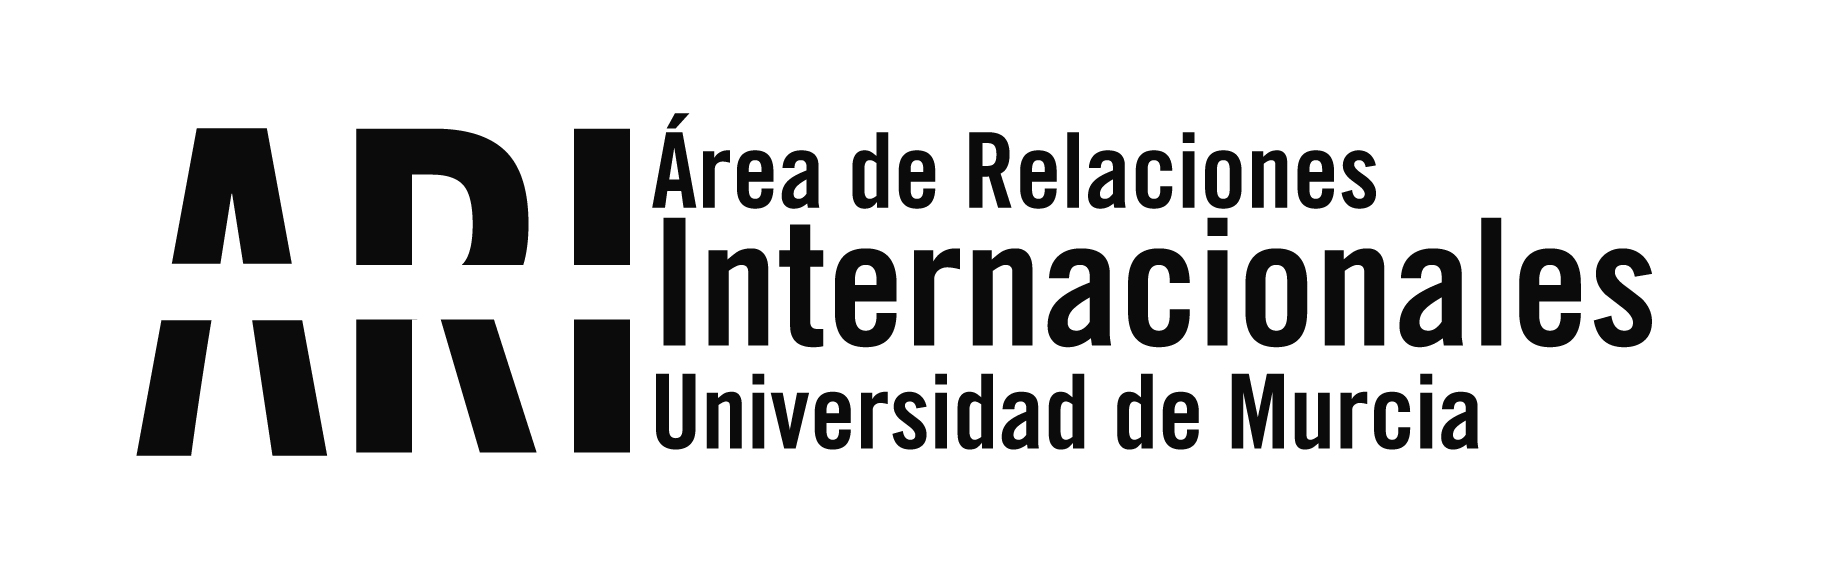 2015-06 XII Encuentro Bilateral Universidades Cubanas y Españolas - Viajes Institucionales - Área de Relaciones Internacionales